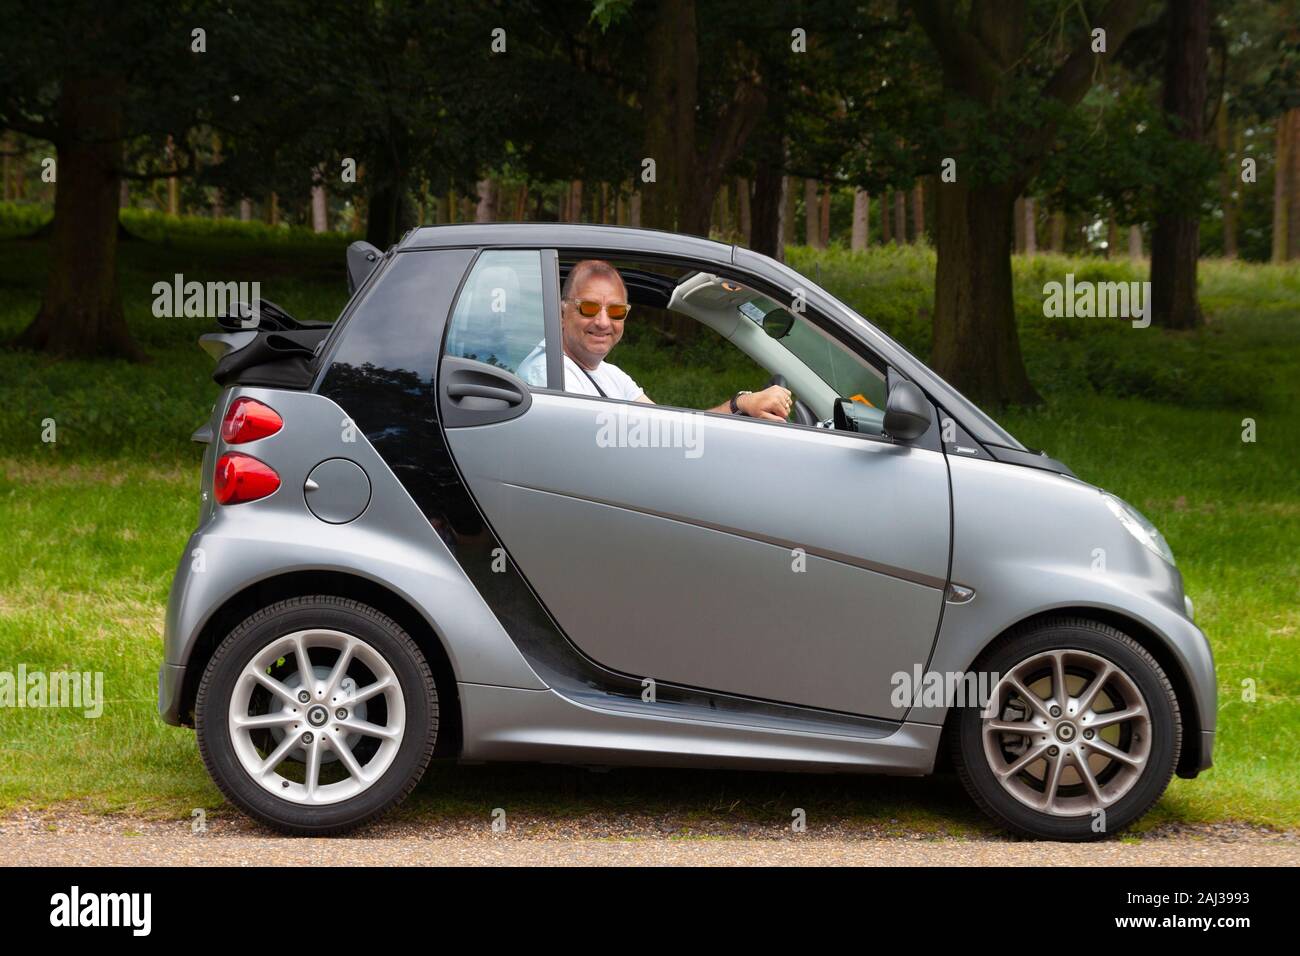 Lächelnd im mittleren Alter cool Mann in Smart Auto mit Verdeck Stockfoto